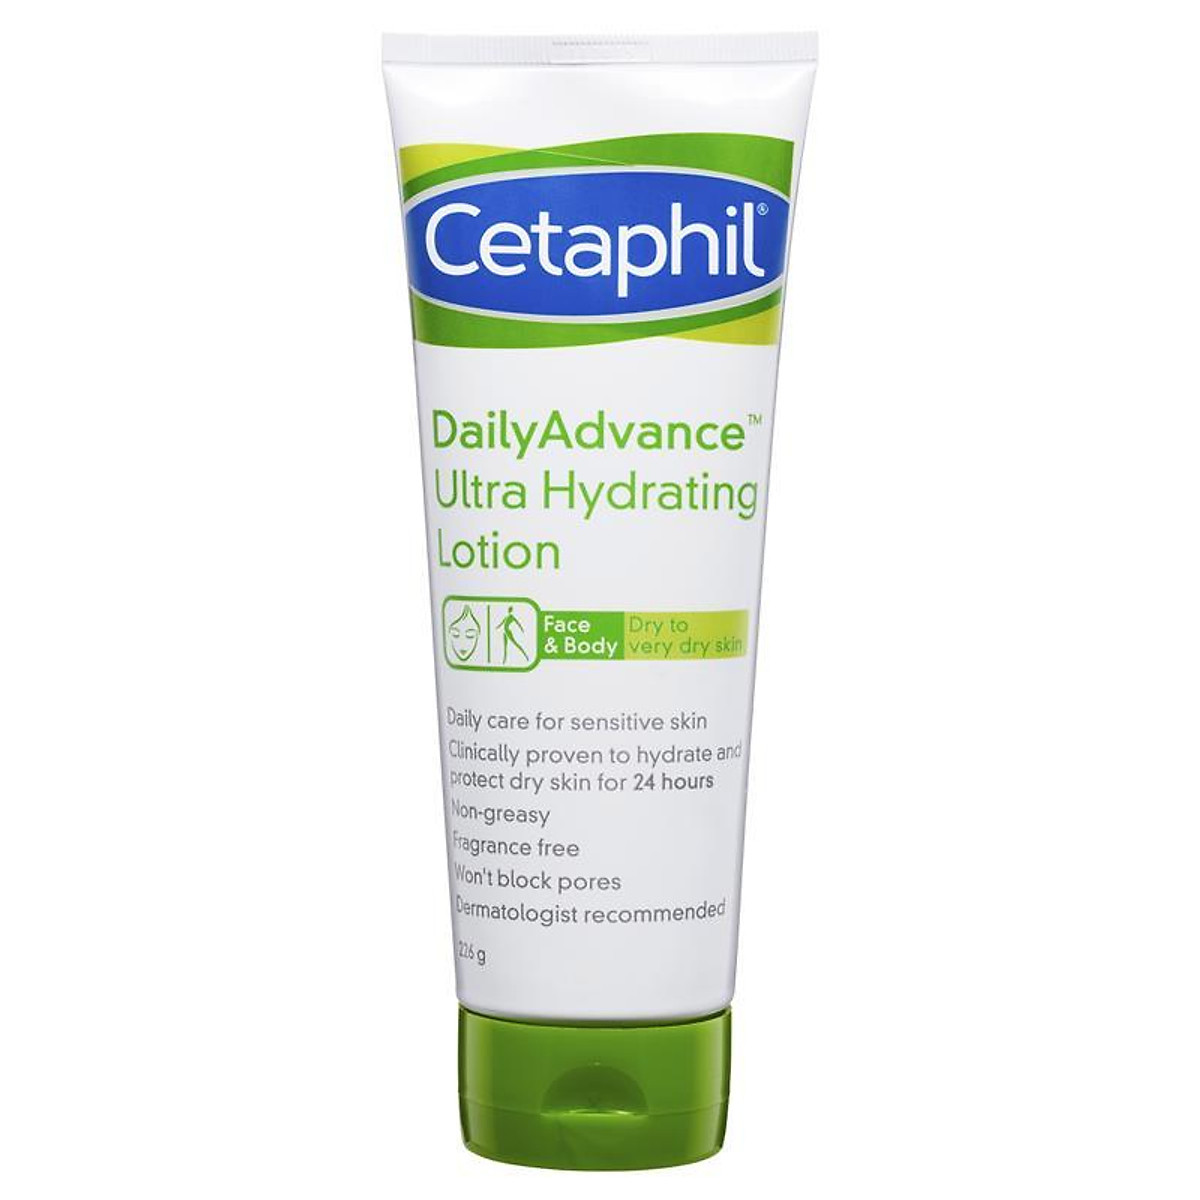 Cetaphil Daily Advance Ultra Hydrating Lotion được dùng phổ biến cho làn da nhạy cảm; có thể sử dụng cho cả da mặt và cơ thể.